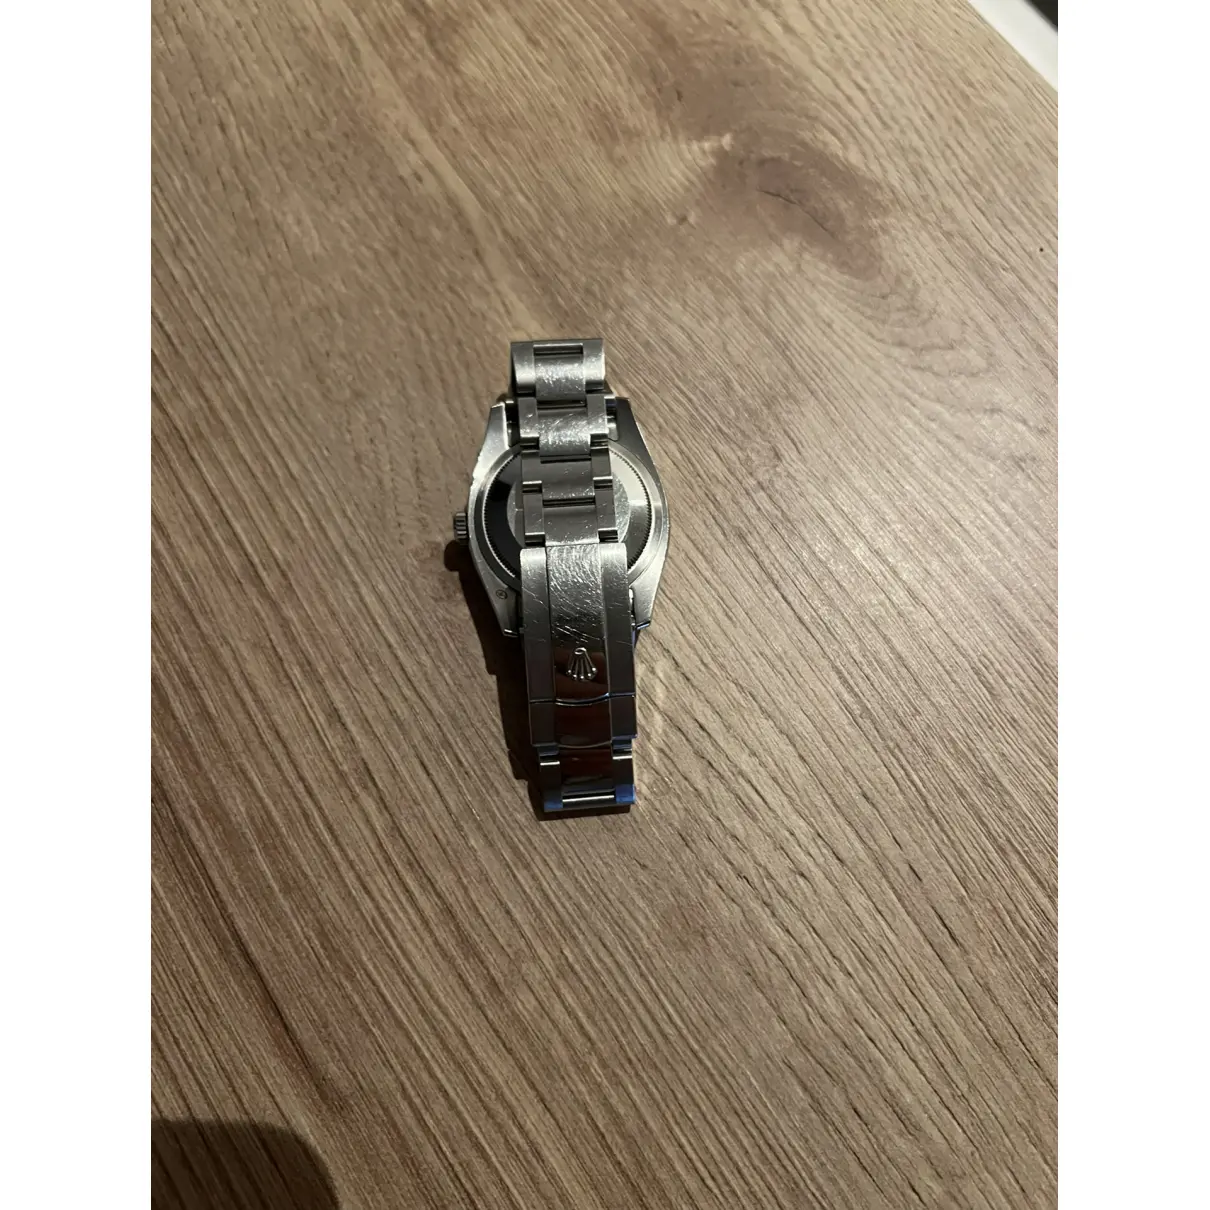 Datejust 36mm watch Rolex